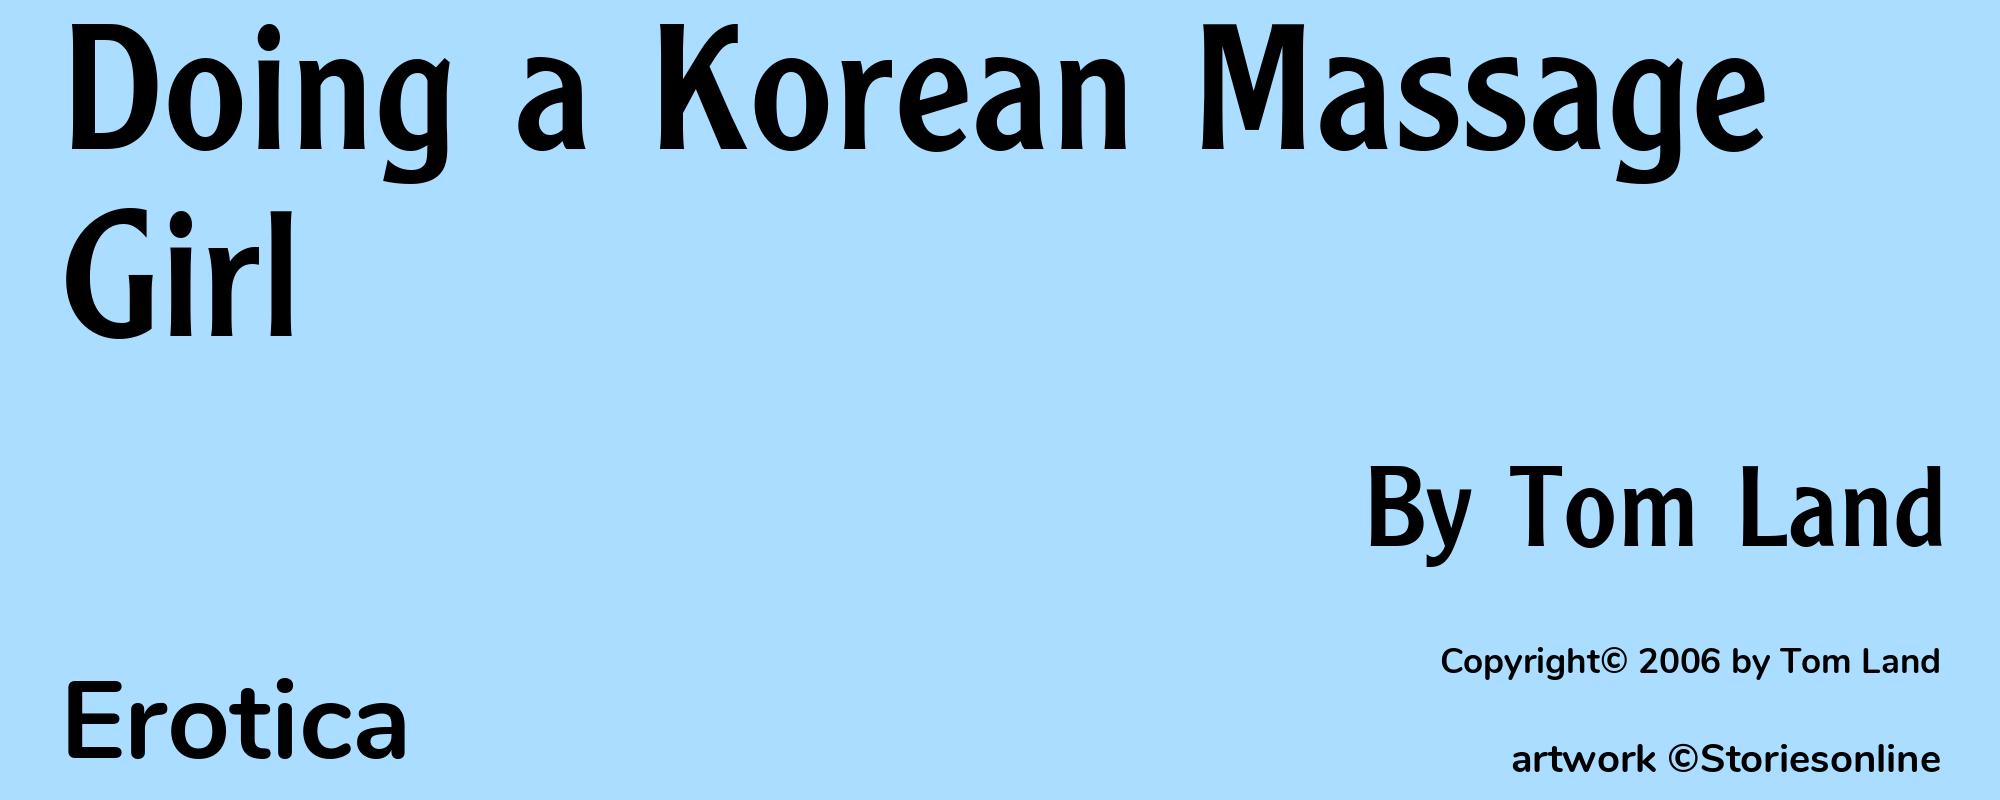 Doing a Korean Massage Girl - Cover